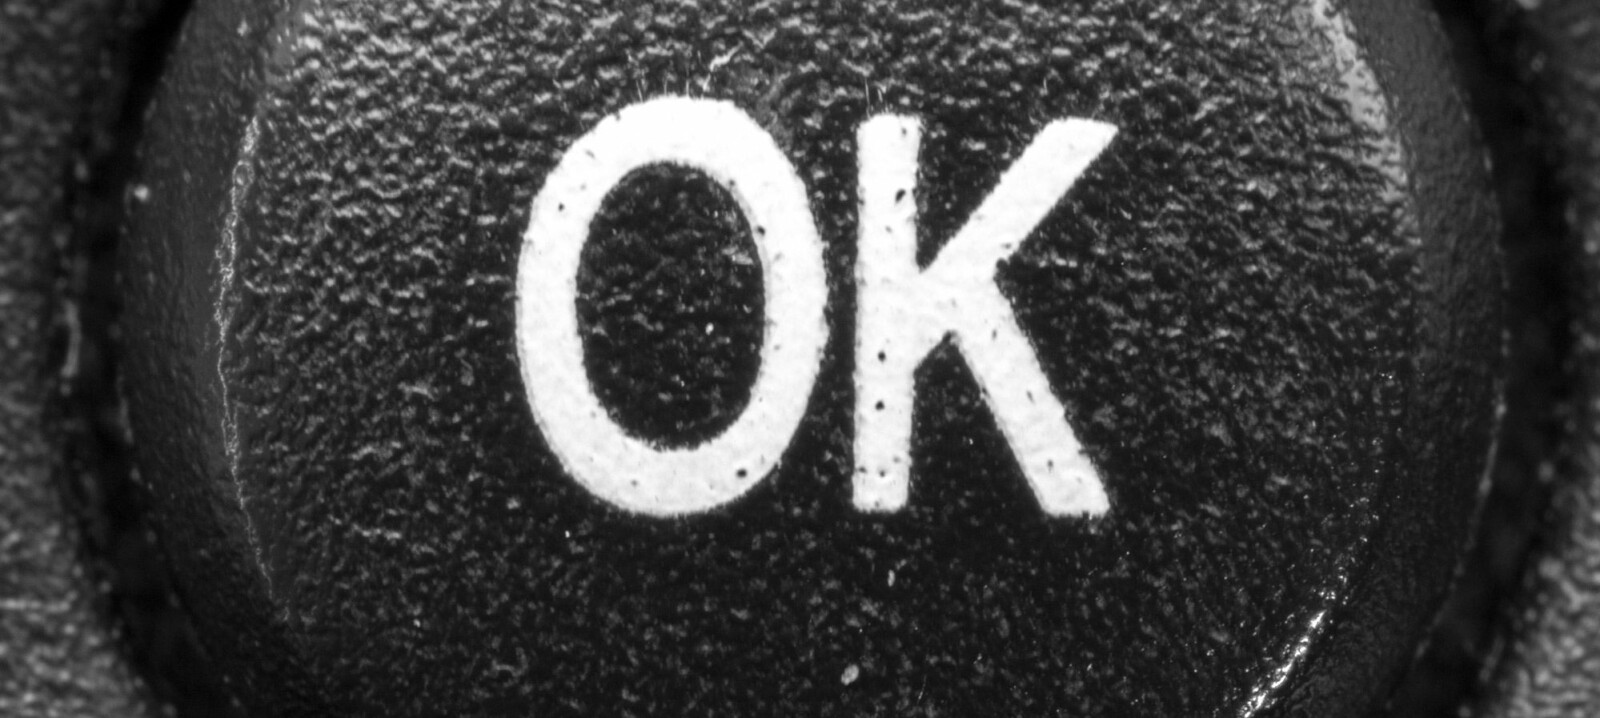 <b>OC IKKE OK:</b> Hva betyr egentlig OK?